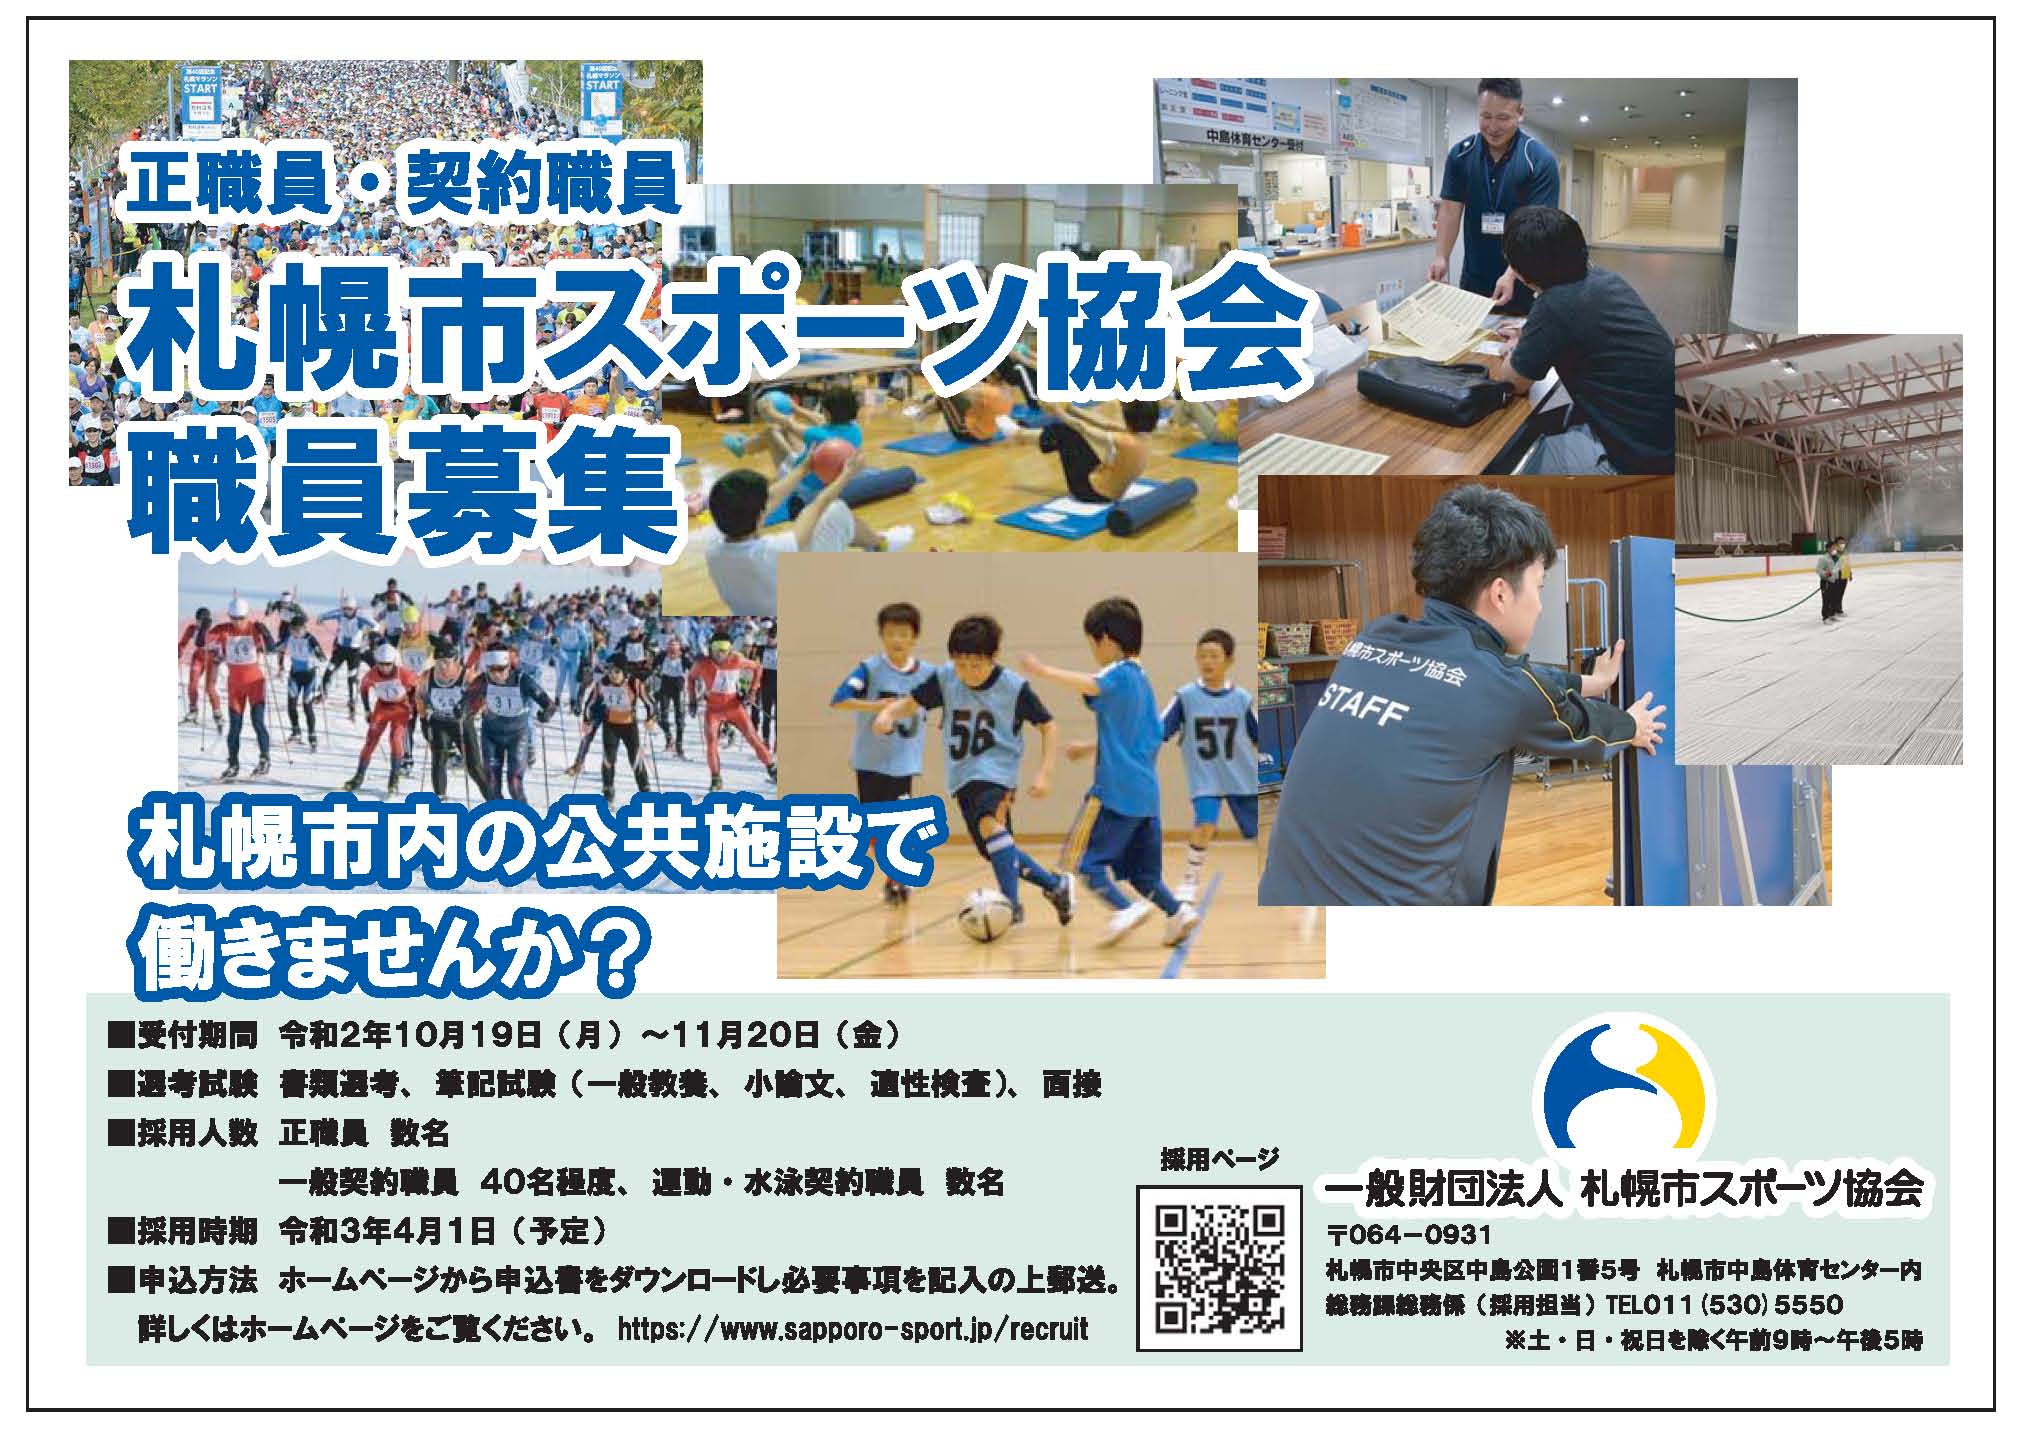 札幌市スポーツ協会 正職員及び契約職員の採用について画像